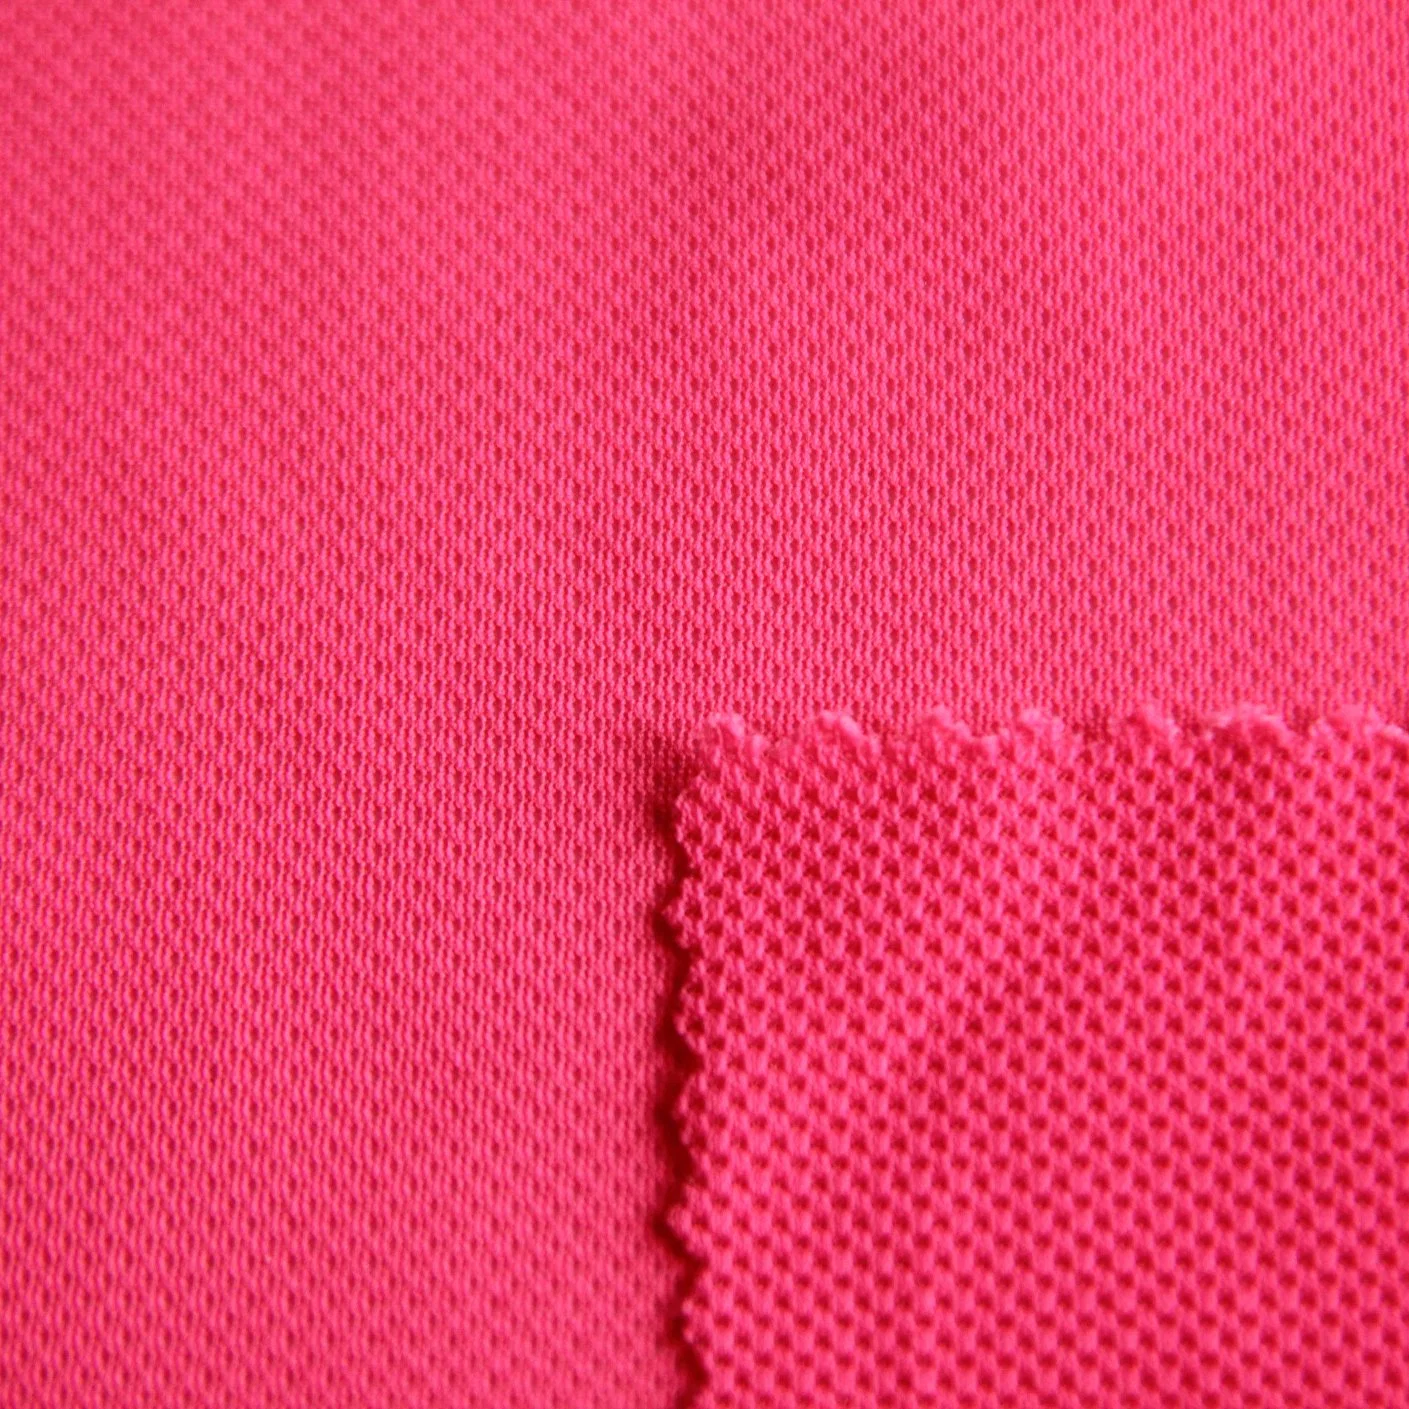 Tela de malla de nailon y spandex rojo para forro/interior de chaqueta